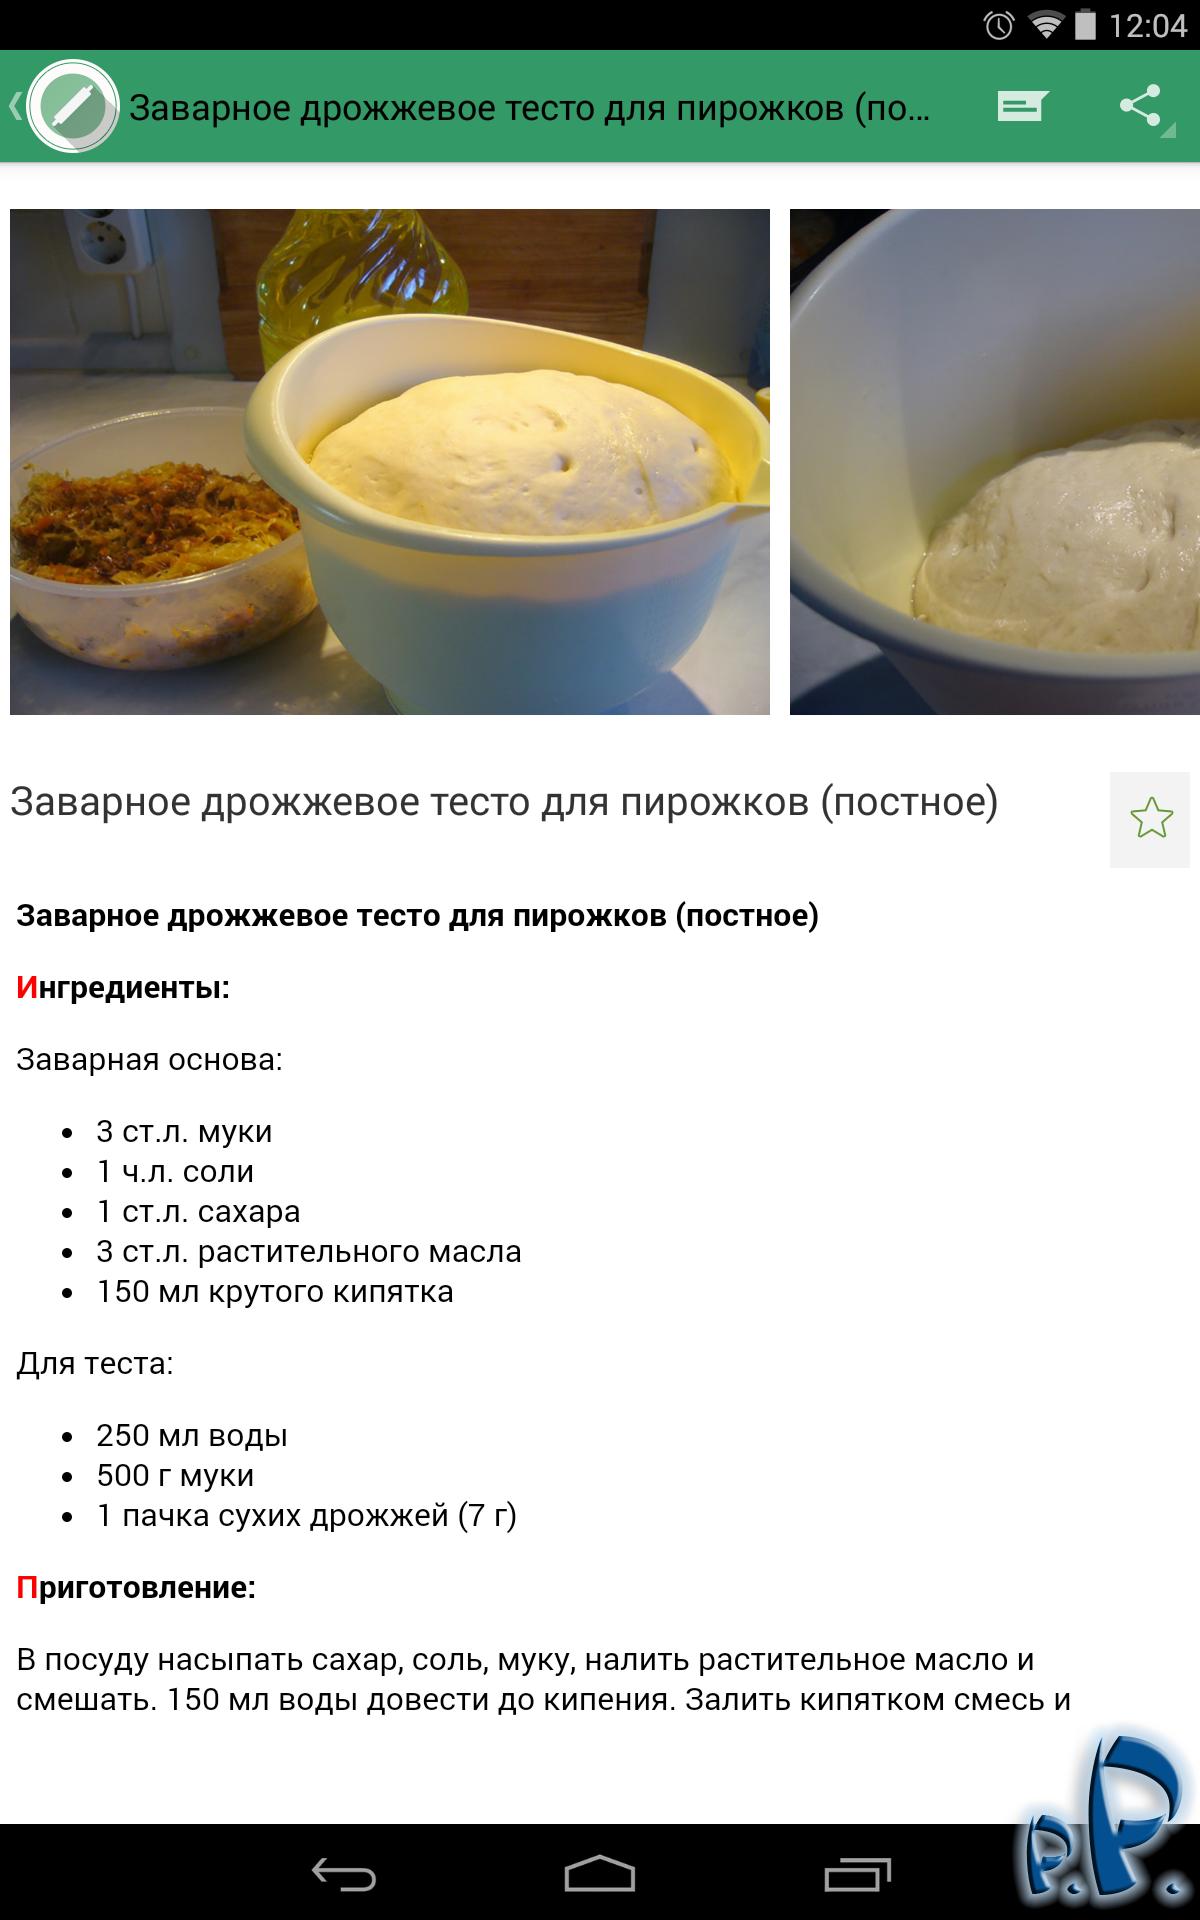 Рецепт теста для пирожков в холодильнике